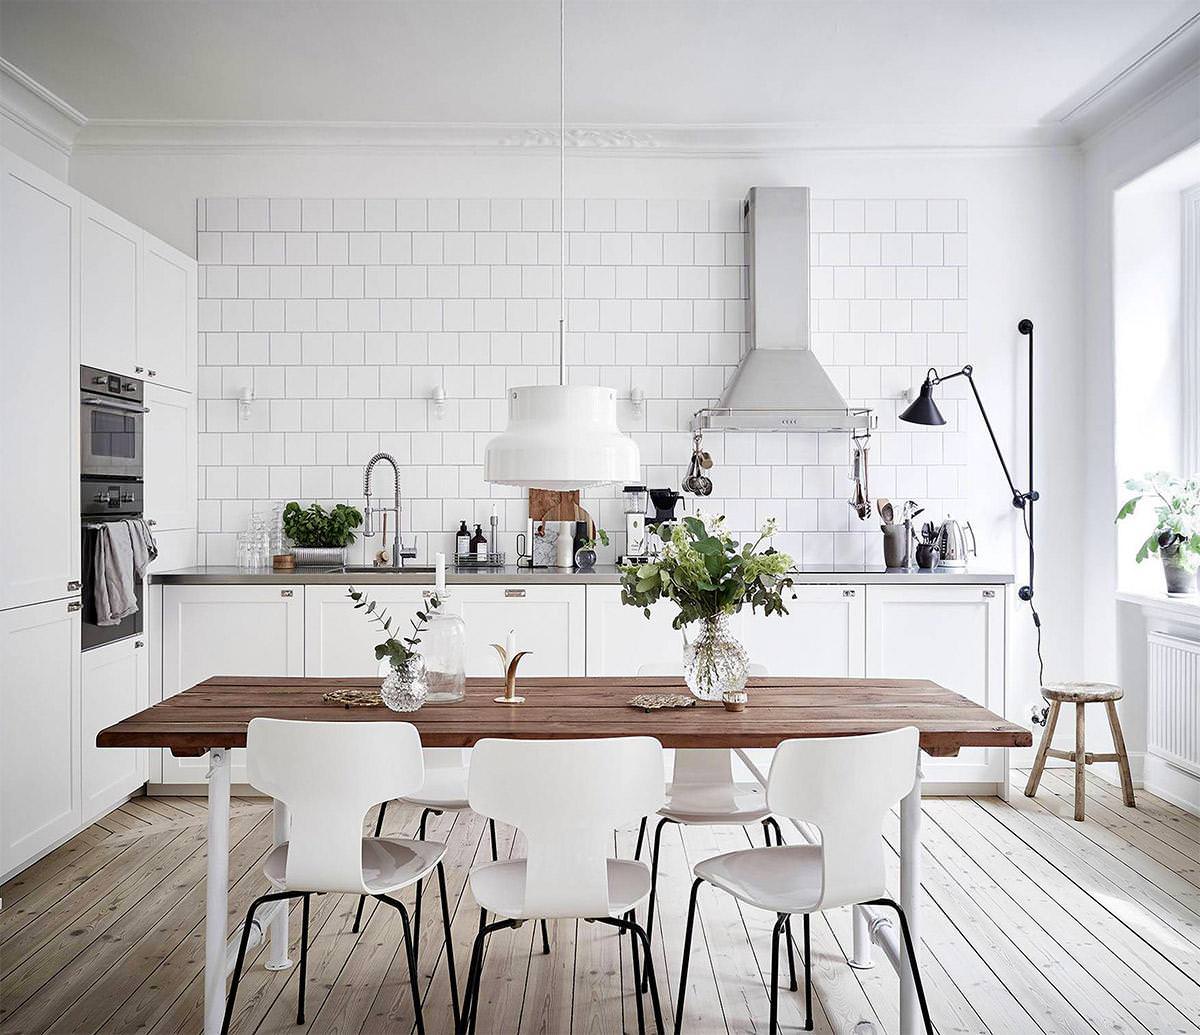 Thiết kế phòng bếp màu trắng giúp tối đa hóa ánh sáng